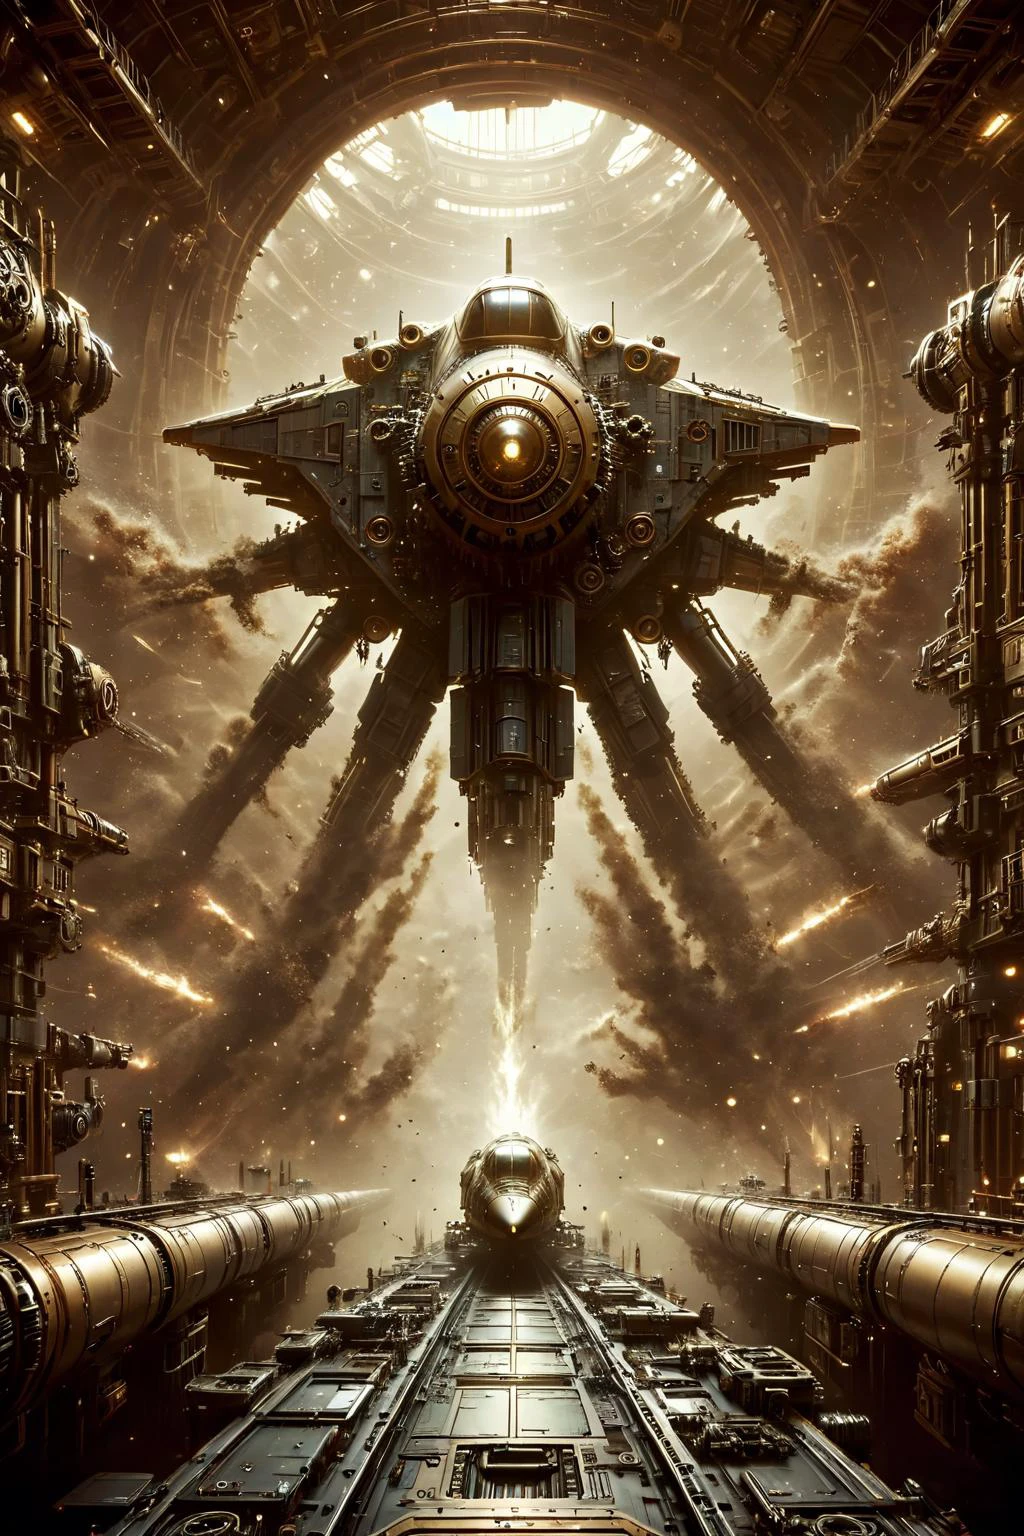 Alien-themed steampunk style dystopian style خيال علمي style (((Ultra-مفصلة, 8 كيلو, دقة عالية, تحفة))),kkw-detailMe-v1.0,انتشار BossFight,آي بي جي,عالم الطاقة الزرقاء,المزارعين,ais-darkpartz,جسر سفينة الفضاء,سفينة فضائية,com.spffwl,, مستقبلية, التكنولوجية, مواضيع الفضاء, الحضارات المتقدمة, تسربات الضوء, مشاعل العدسة, كئيب, آخر المروع, حزين, دراماتيكي, highly مفصلة, العتيقة, ميكانيكي, نغمات النحاس والنحاس, التروس, معقد, مفصلة . خارج كوكب الأرض, كوني, عالم آخر, غامض, خيال علمي, highly مفصلة